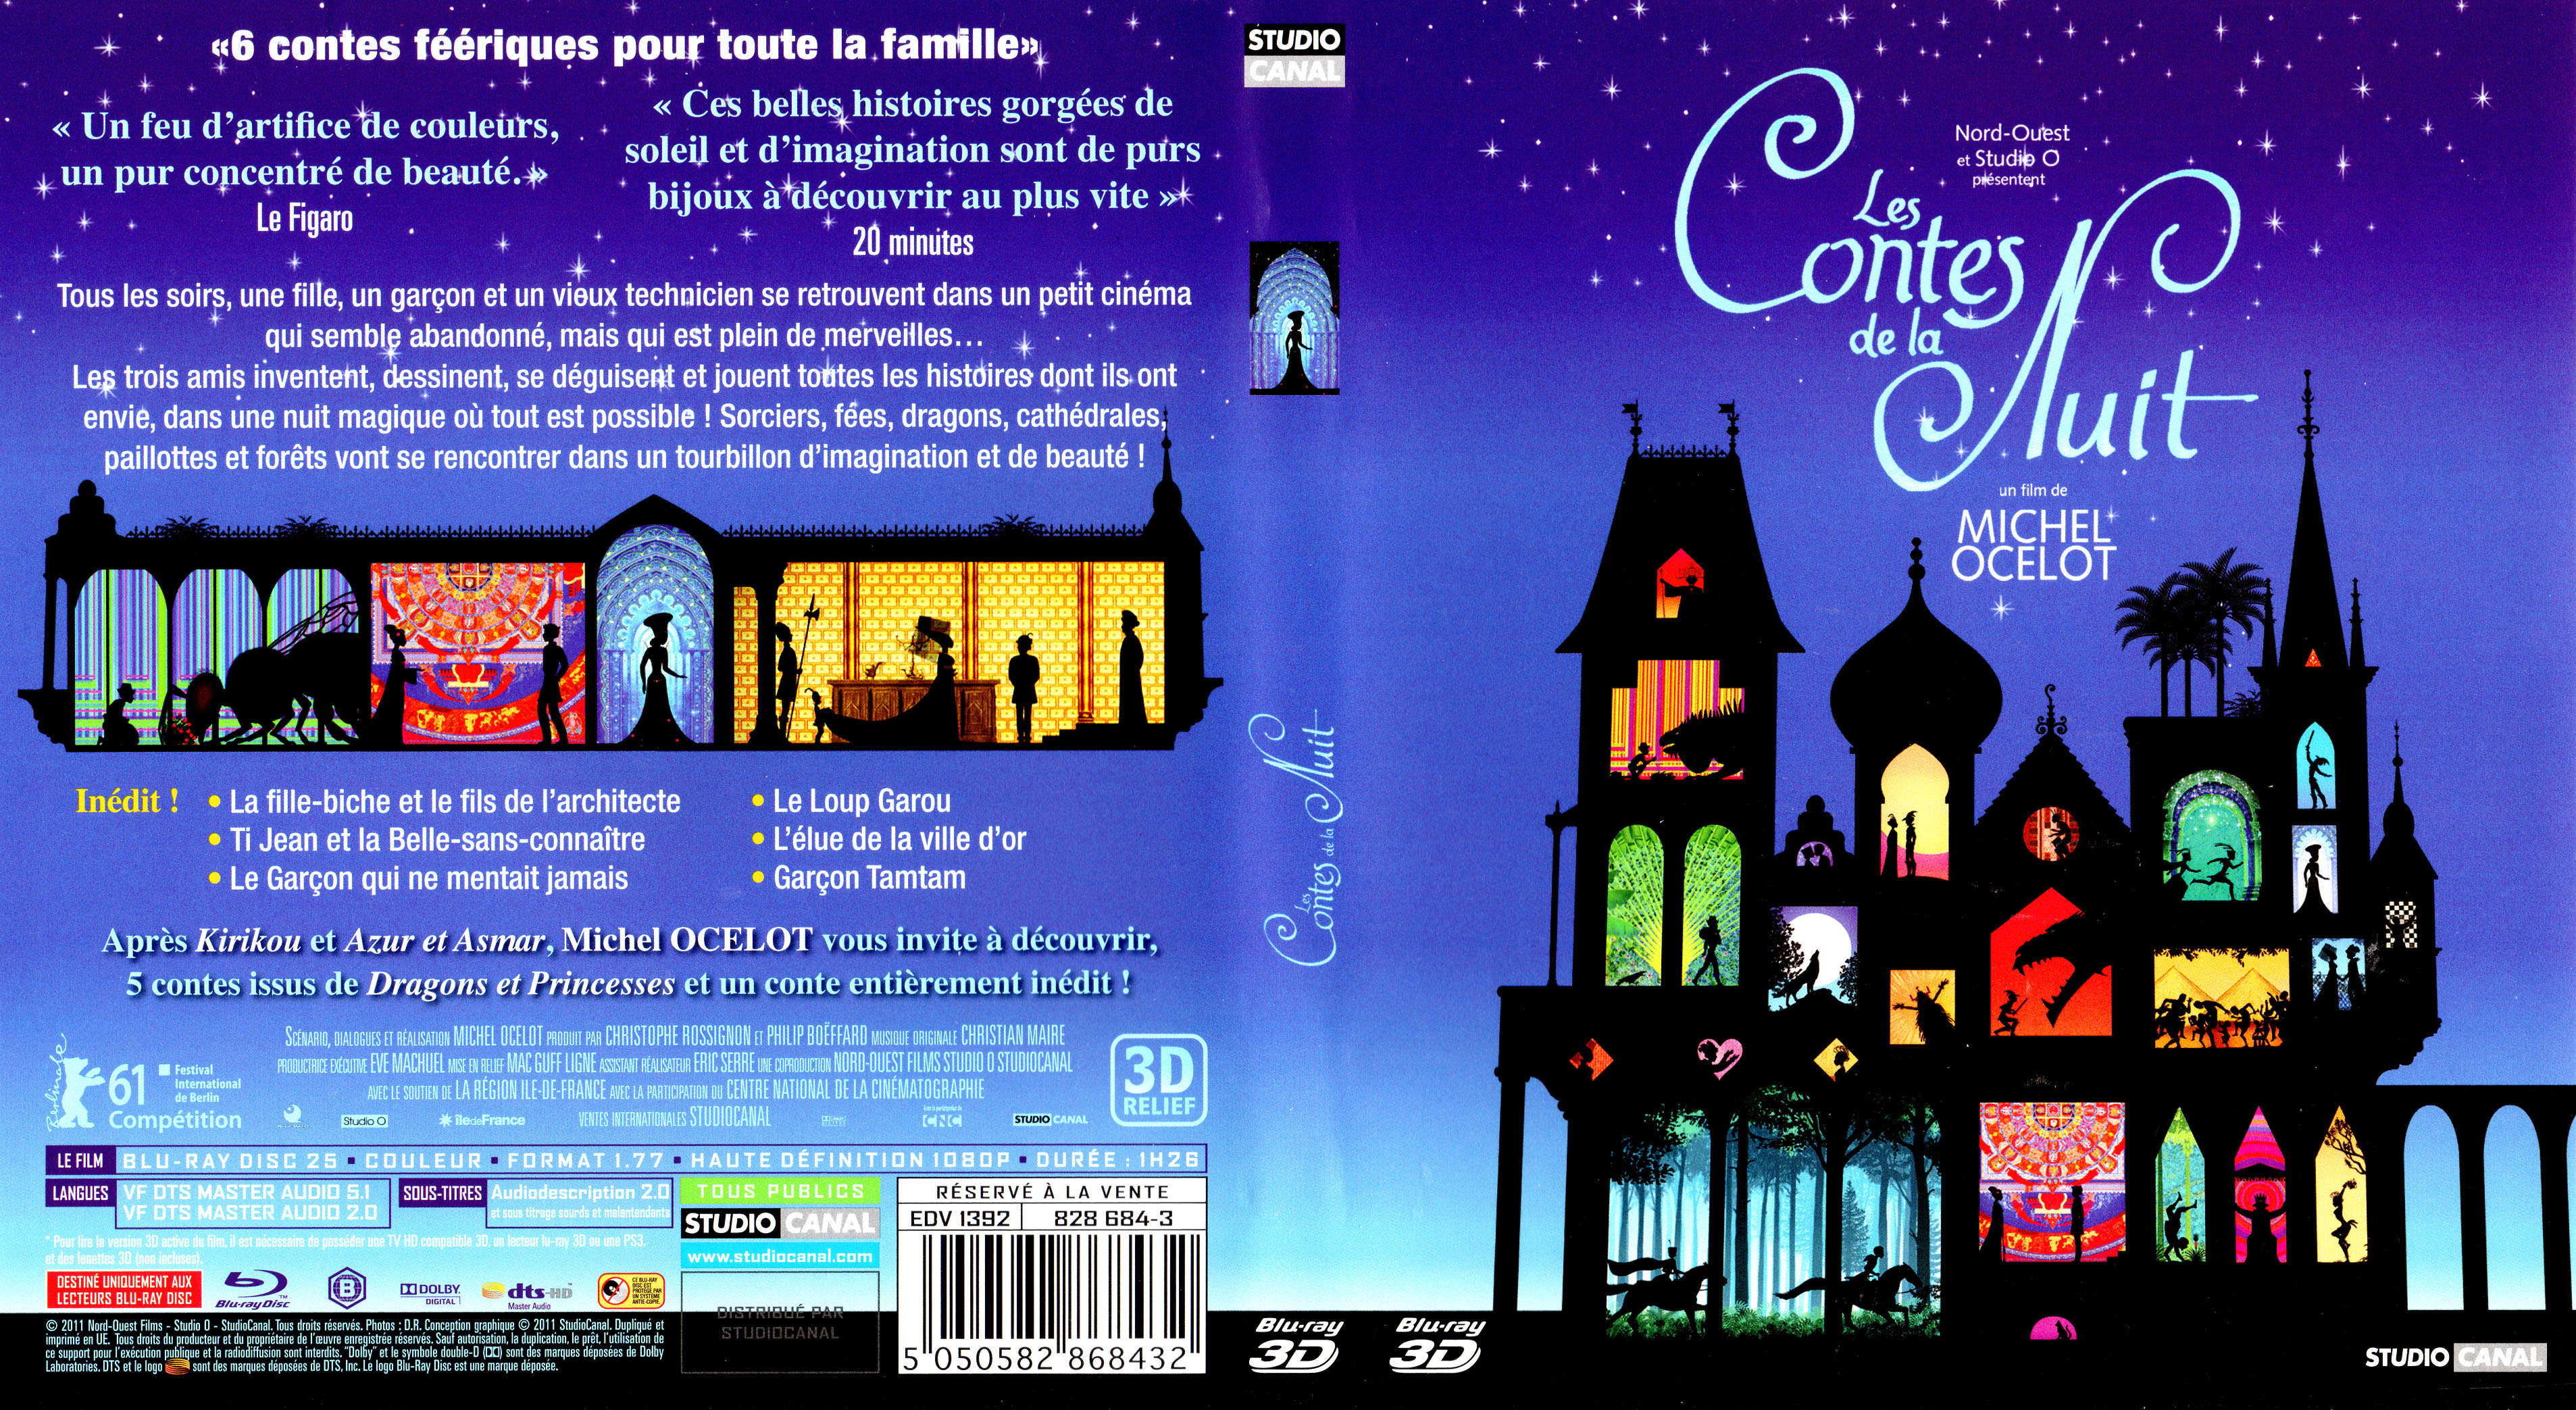 Jaquette DVD Les contes de la nuit 3D (BLU-RAY) v2